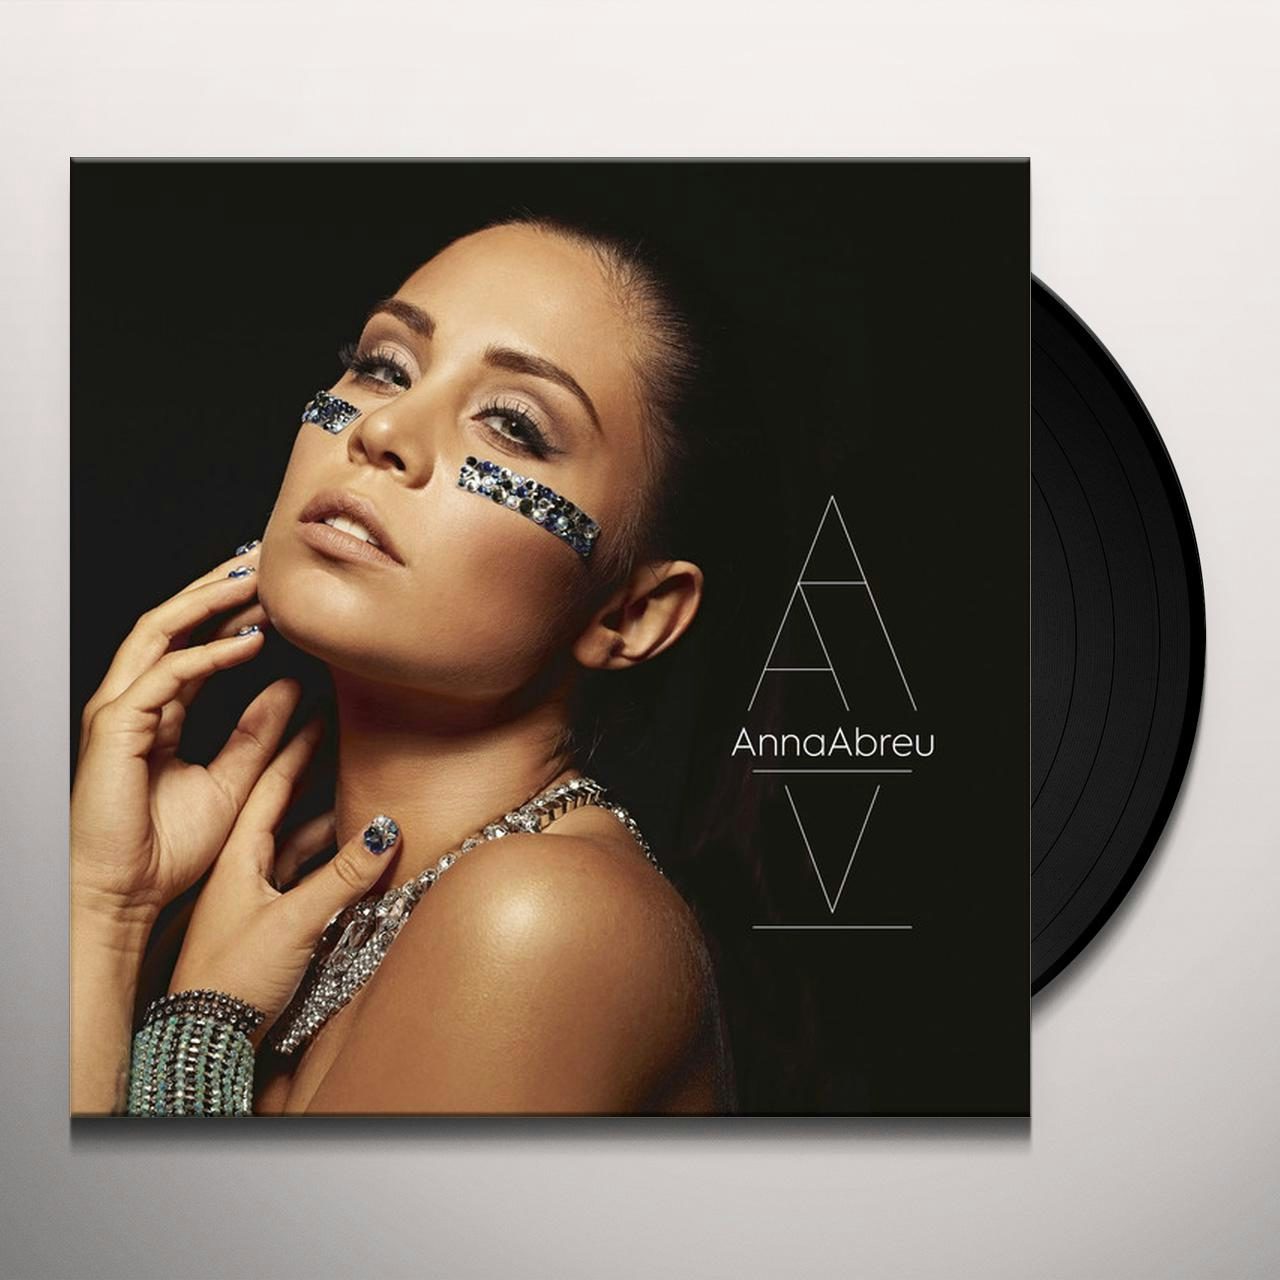 Anna Abreu Store: Official Merch & Vinyl